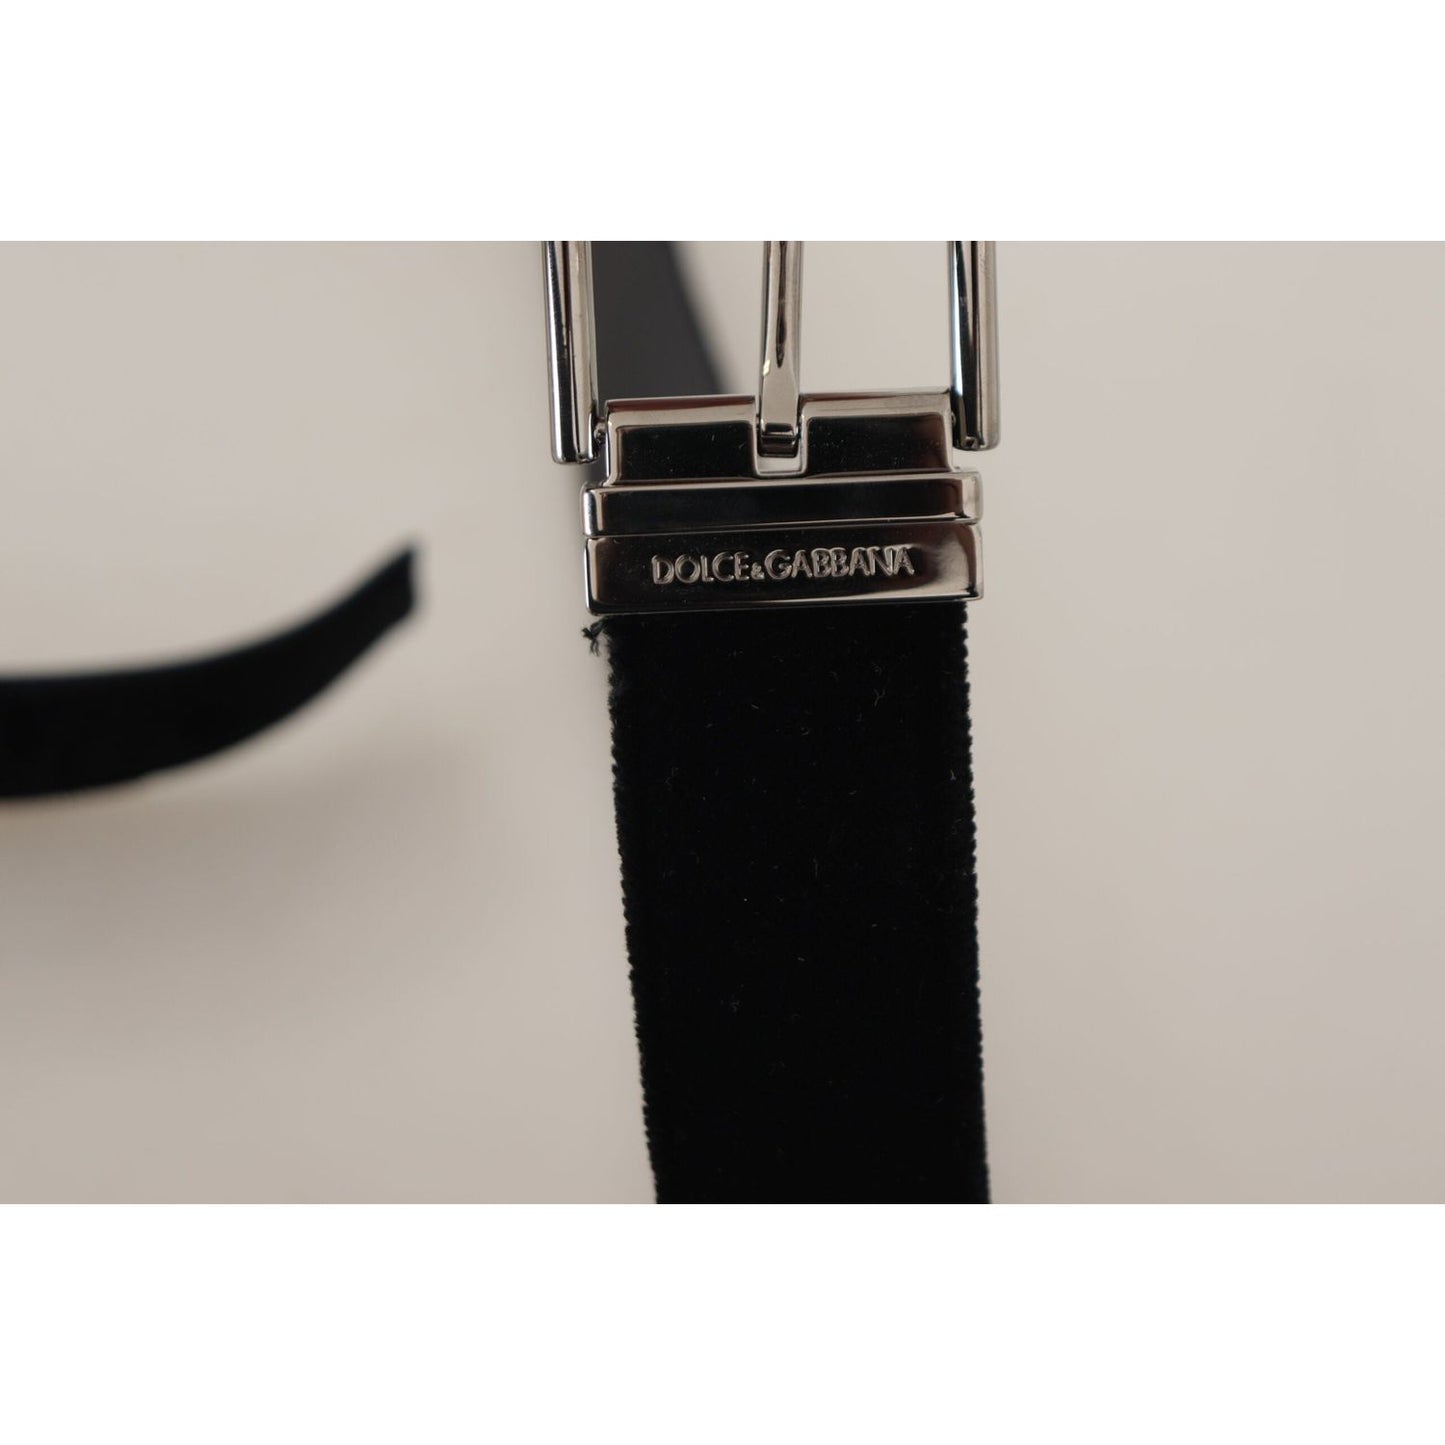 Dolce & Gabbana Sophisticated Velvet Leather Belt black-velvet-silver-logo-engraved-metal-buckle-belt IMG_0542-scaled-24b48ef6-7ba.jpg